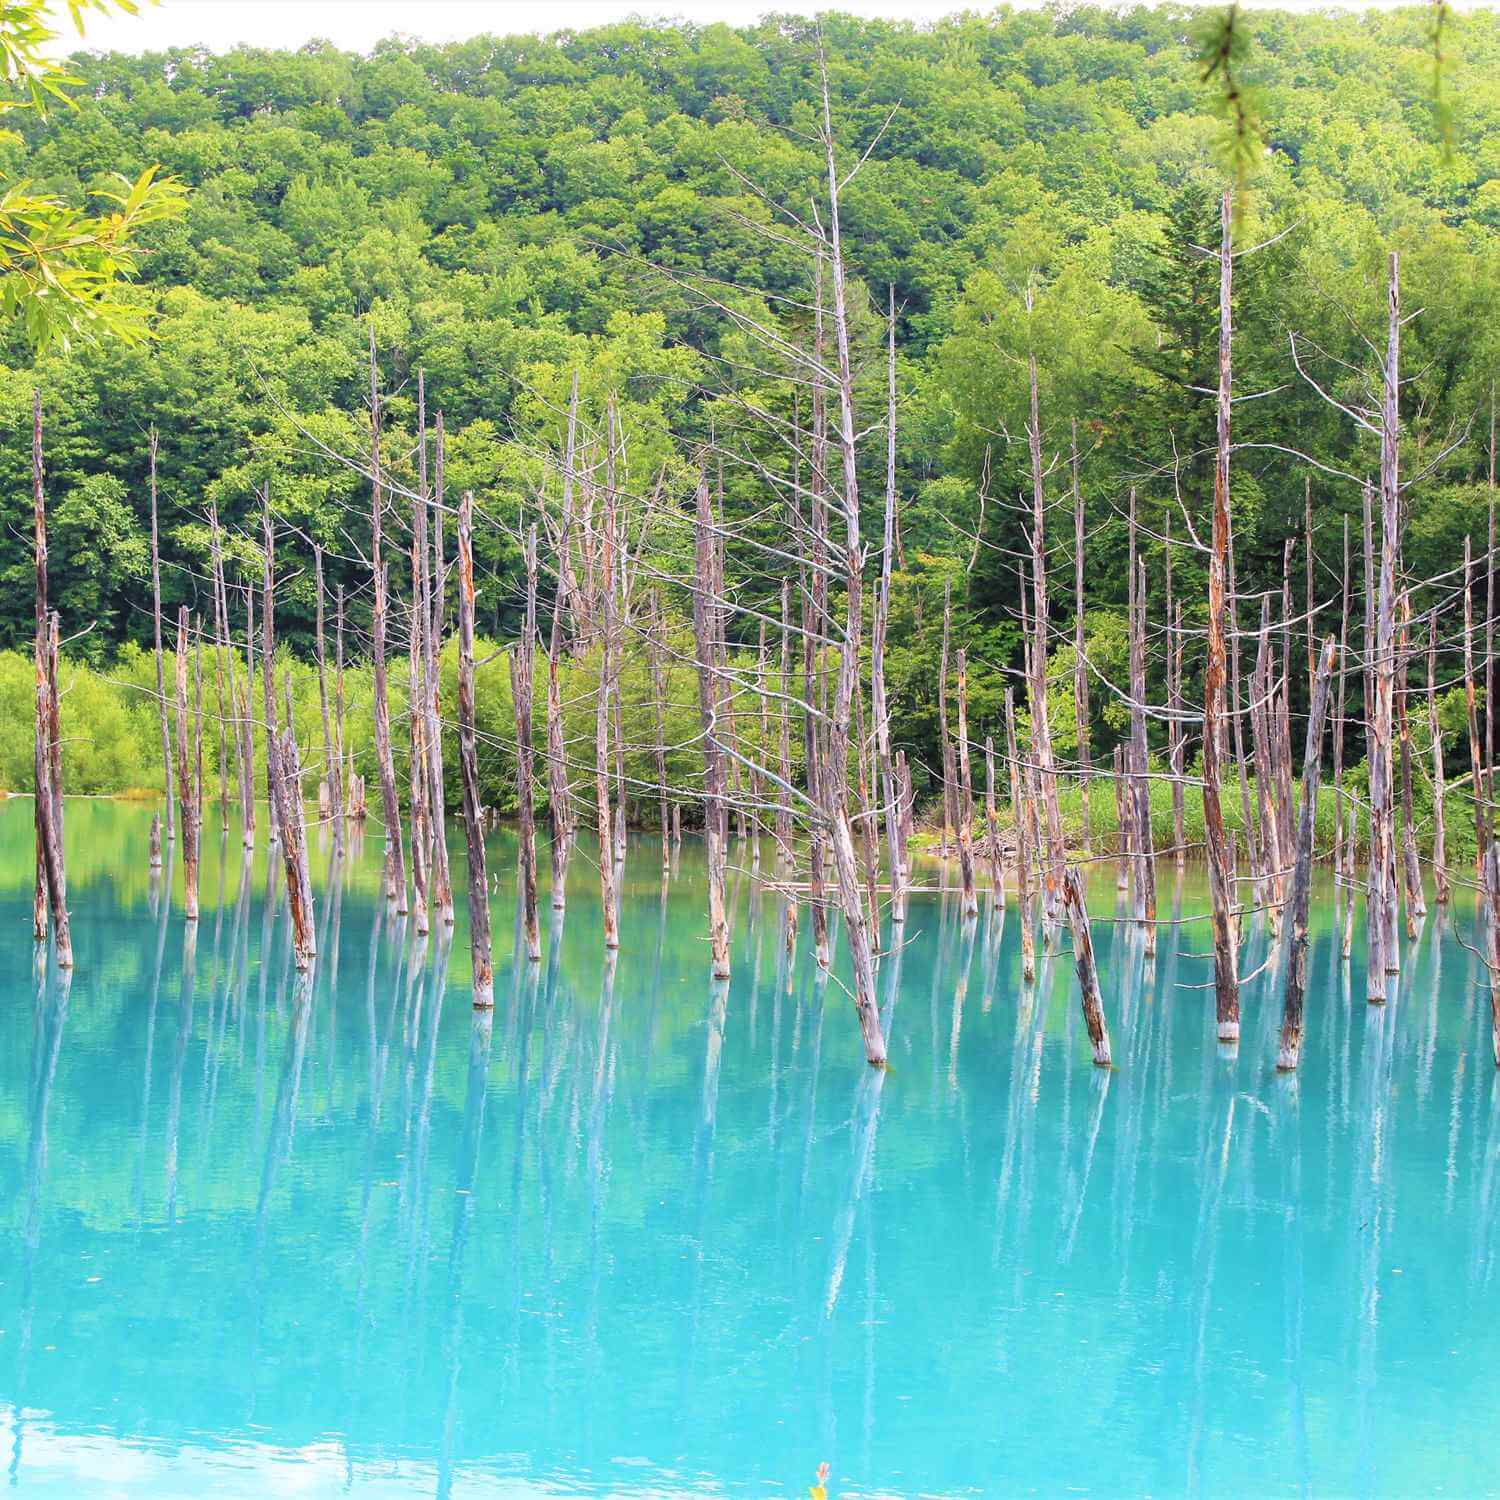 Blue pond in Biei, Hokkaido = Shutterstock